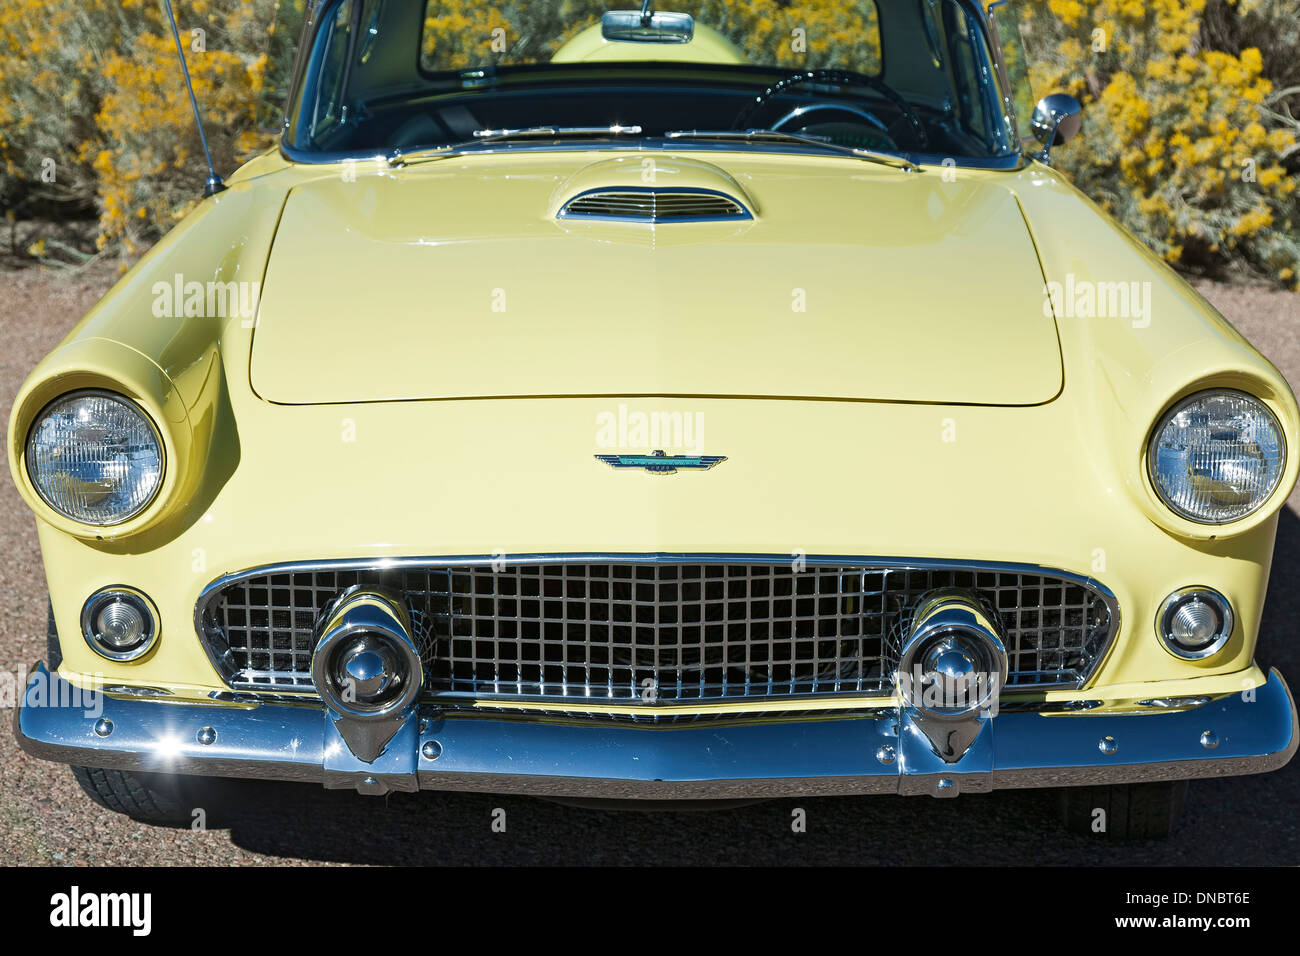 1956 Ford Thunderbird, Santa Fe, New Mexico USA Stock Photo